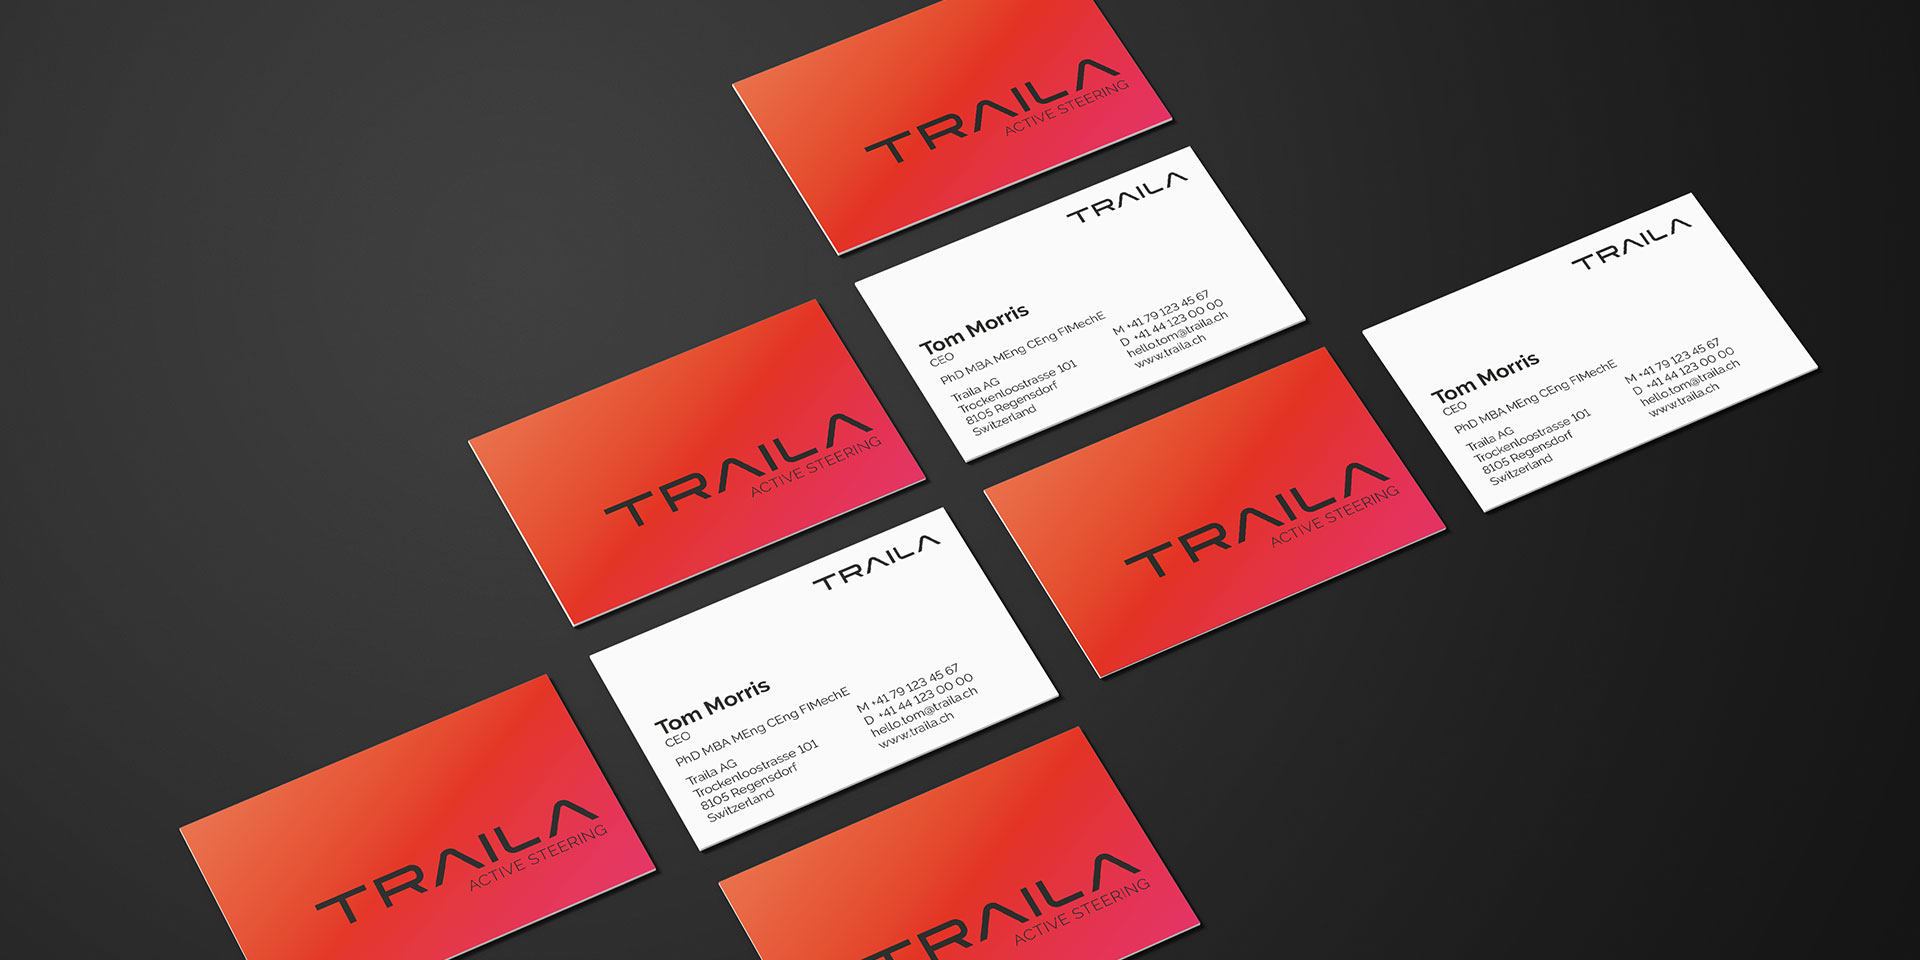 Teaser Traila milani designagentur consulting branding Markenauftritt designguideline briefschaften.jpg